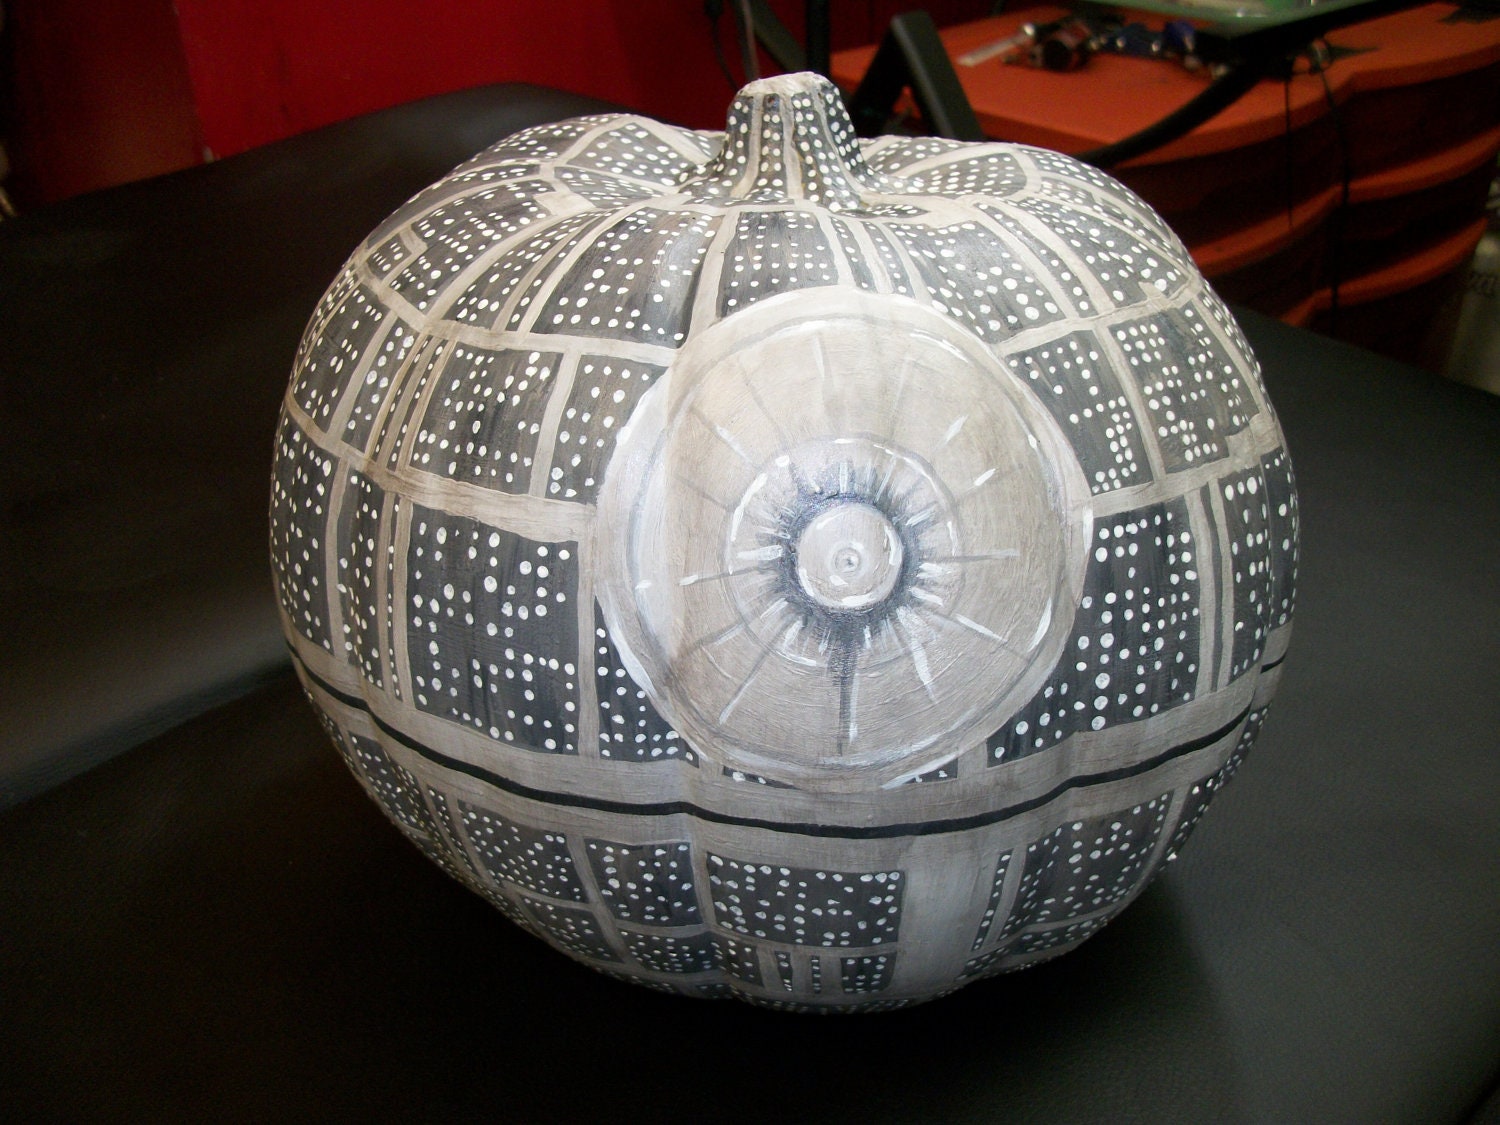 Death Star styled (fake) pumpkin - UV reactive & glow-in-the-dark details